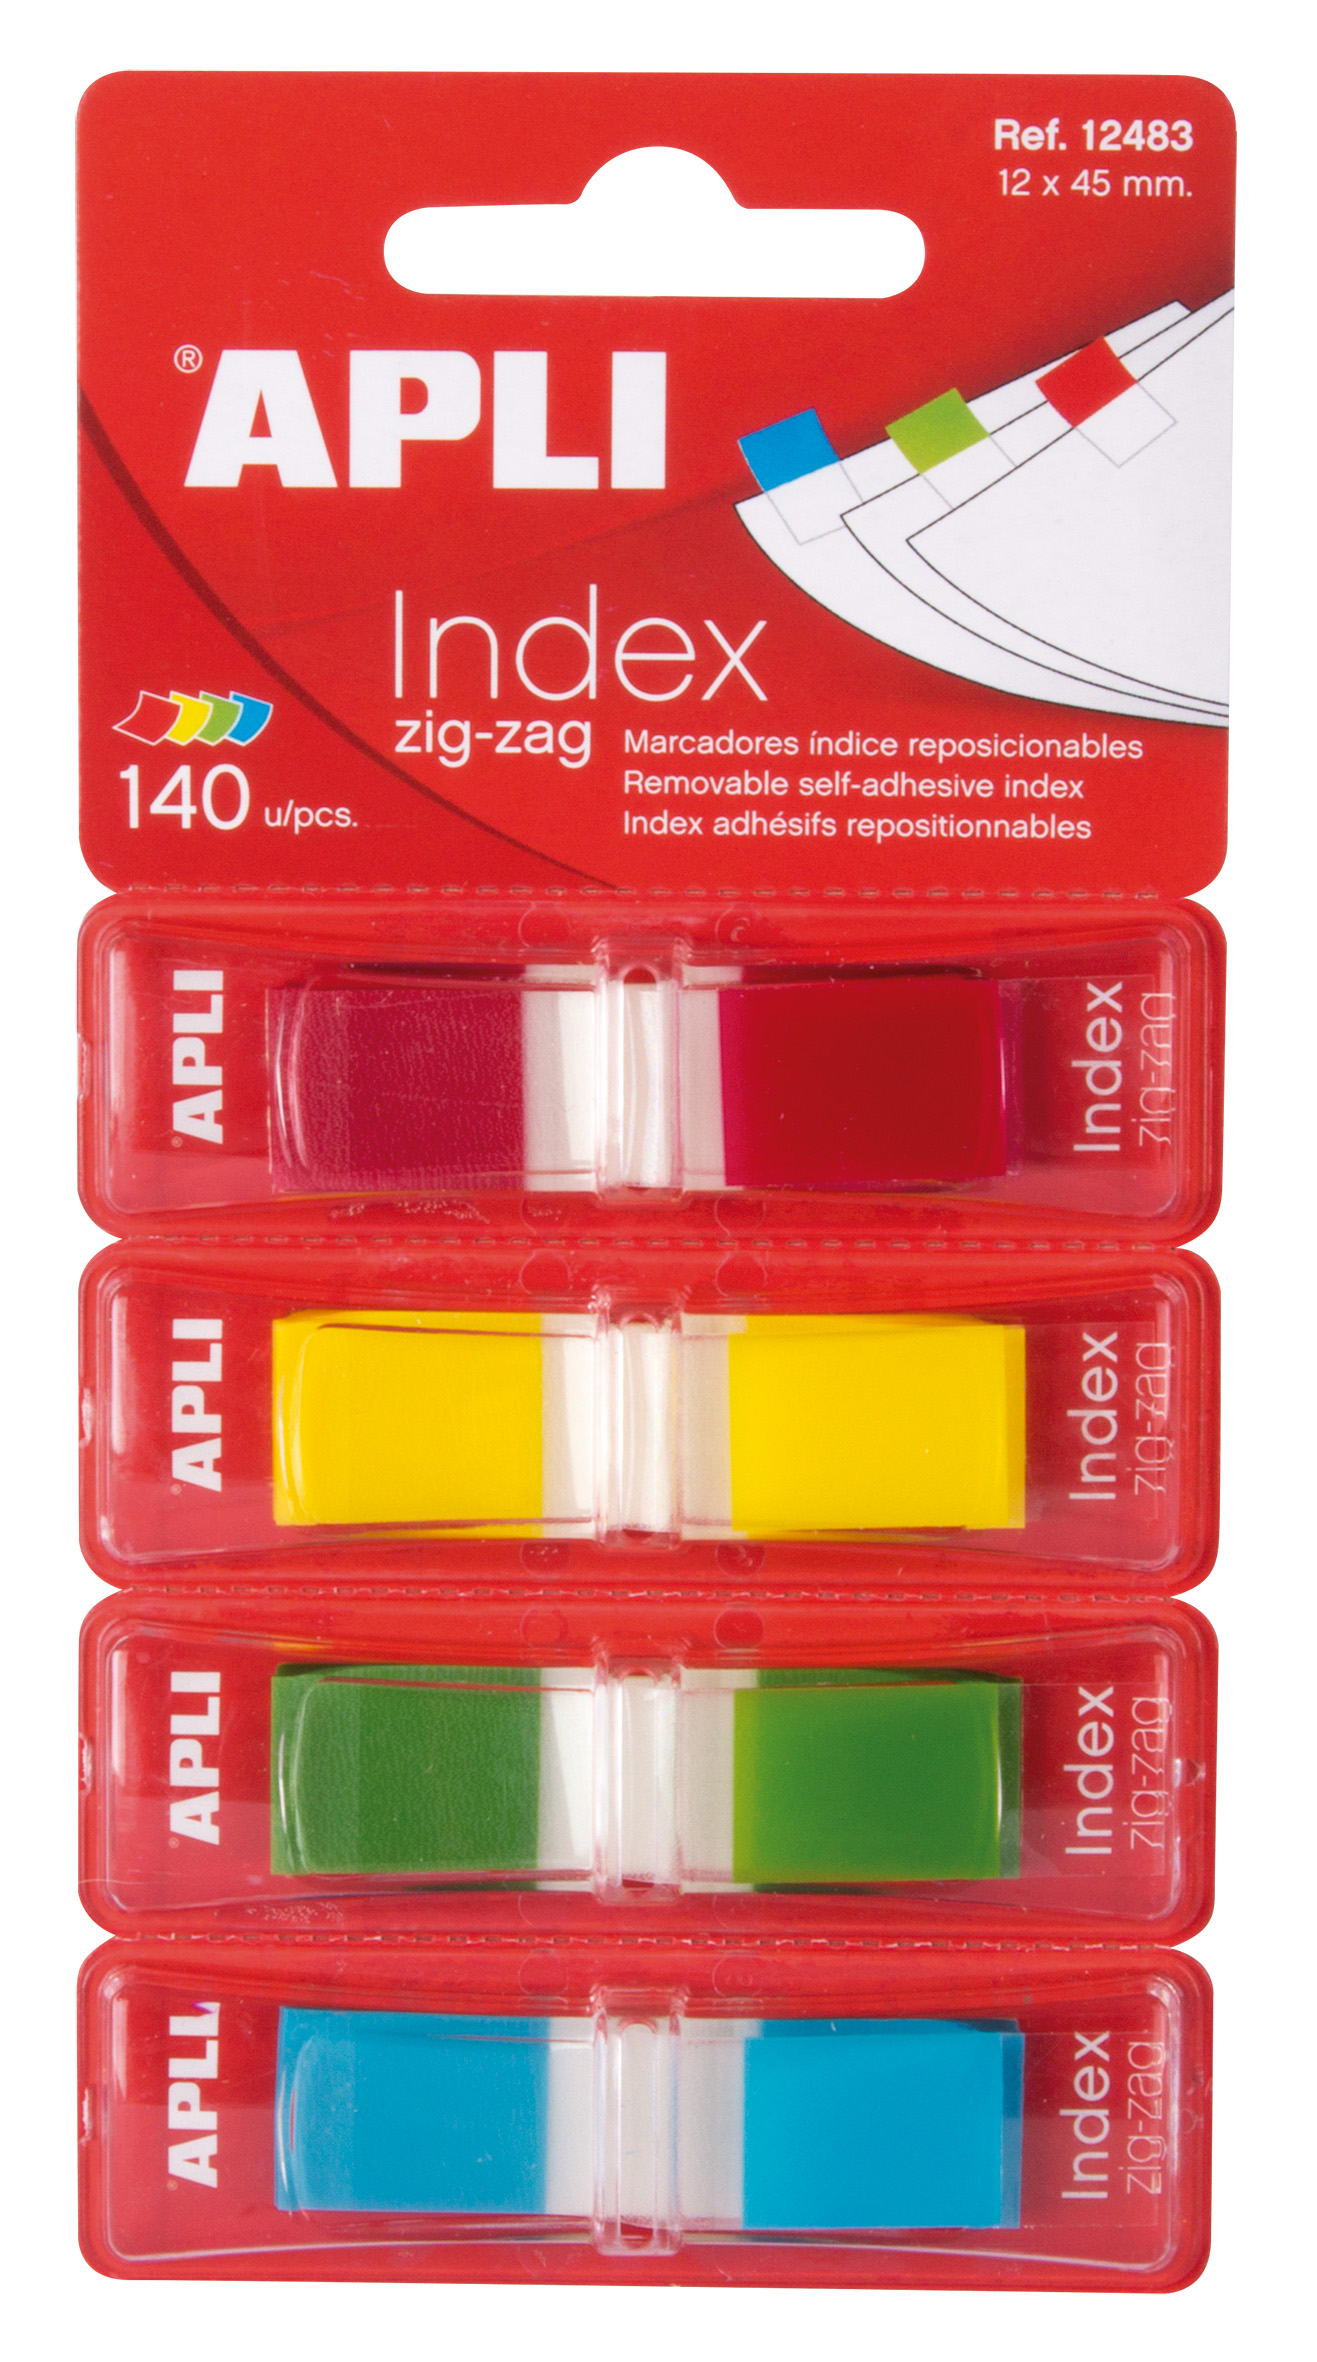 Apli Zigzag Film Index Adhésifs 45x12mm 4 Distributeurs de 35 Index de 4 Couleurs - Facile à Appliquer - Adhésif de Qualité - Design Zigzag - Organisez Vos Documents - Multicolore